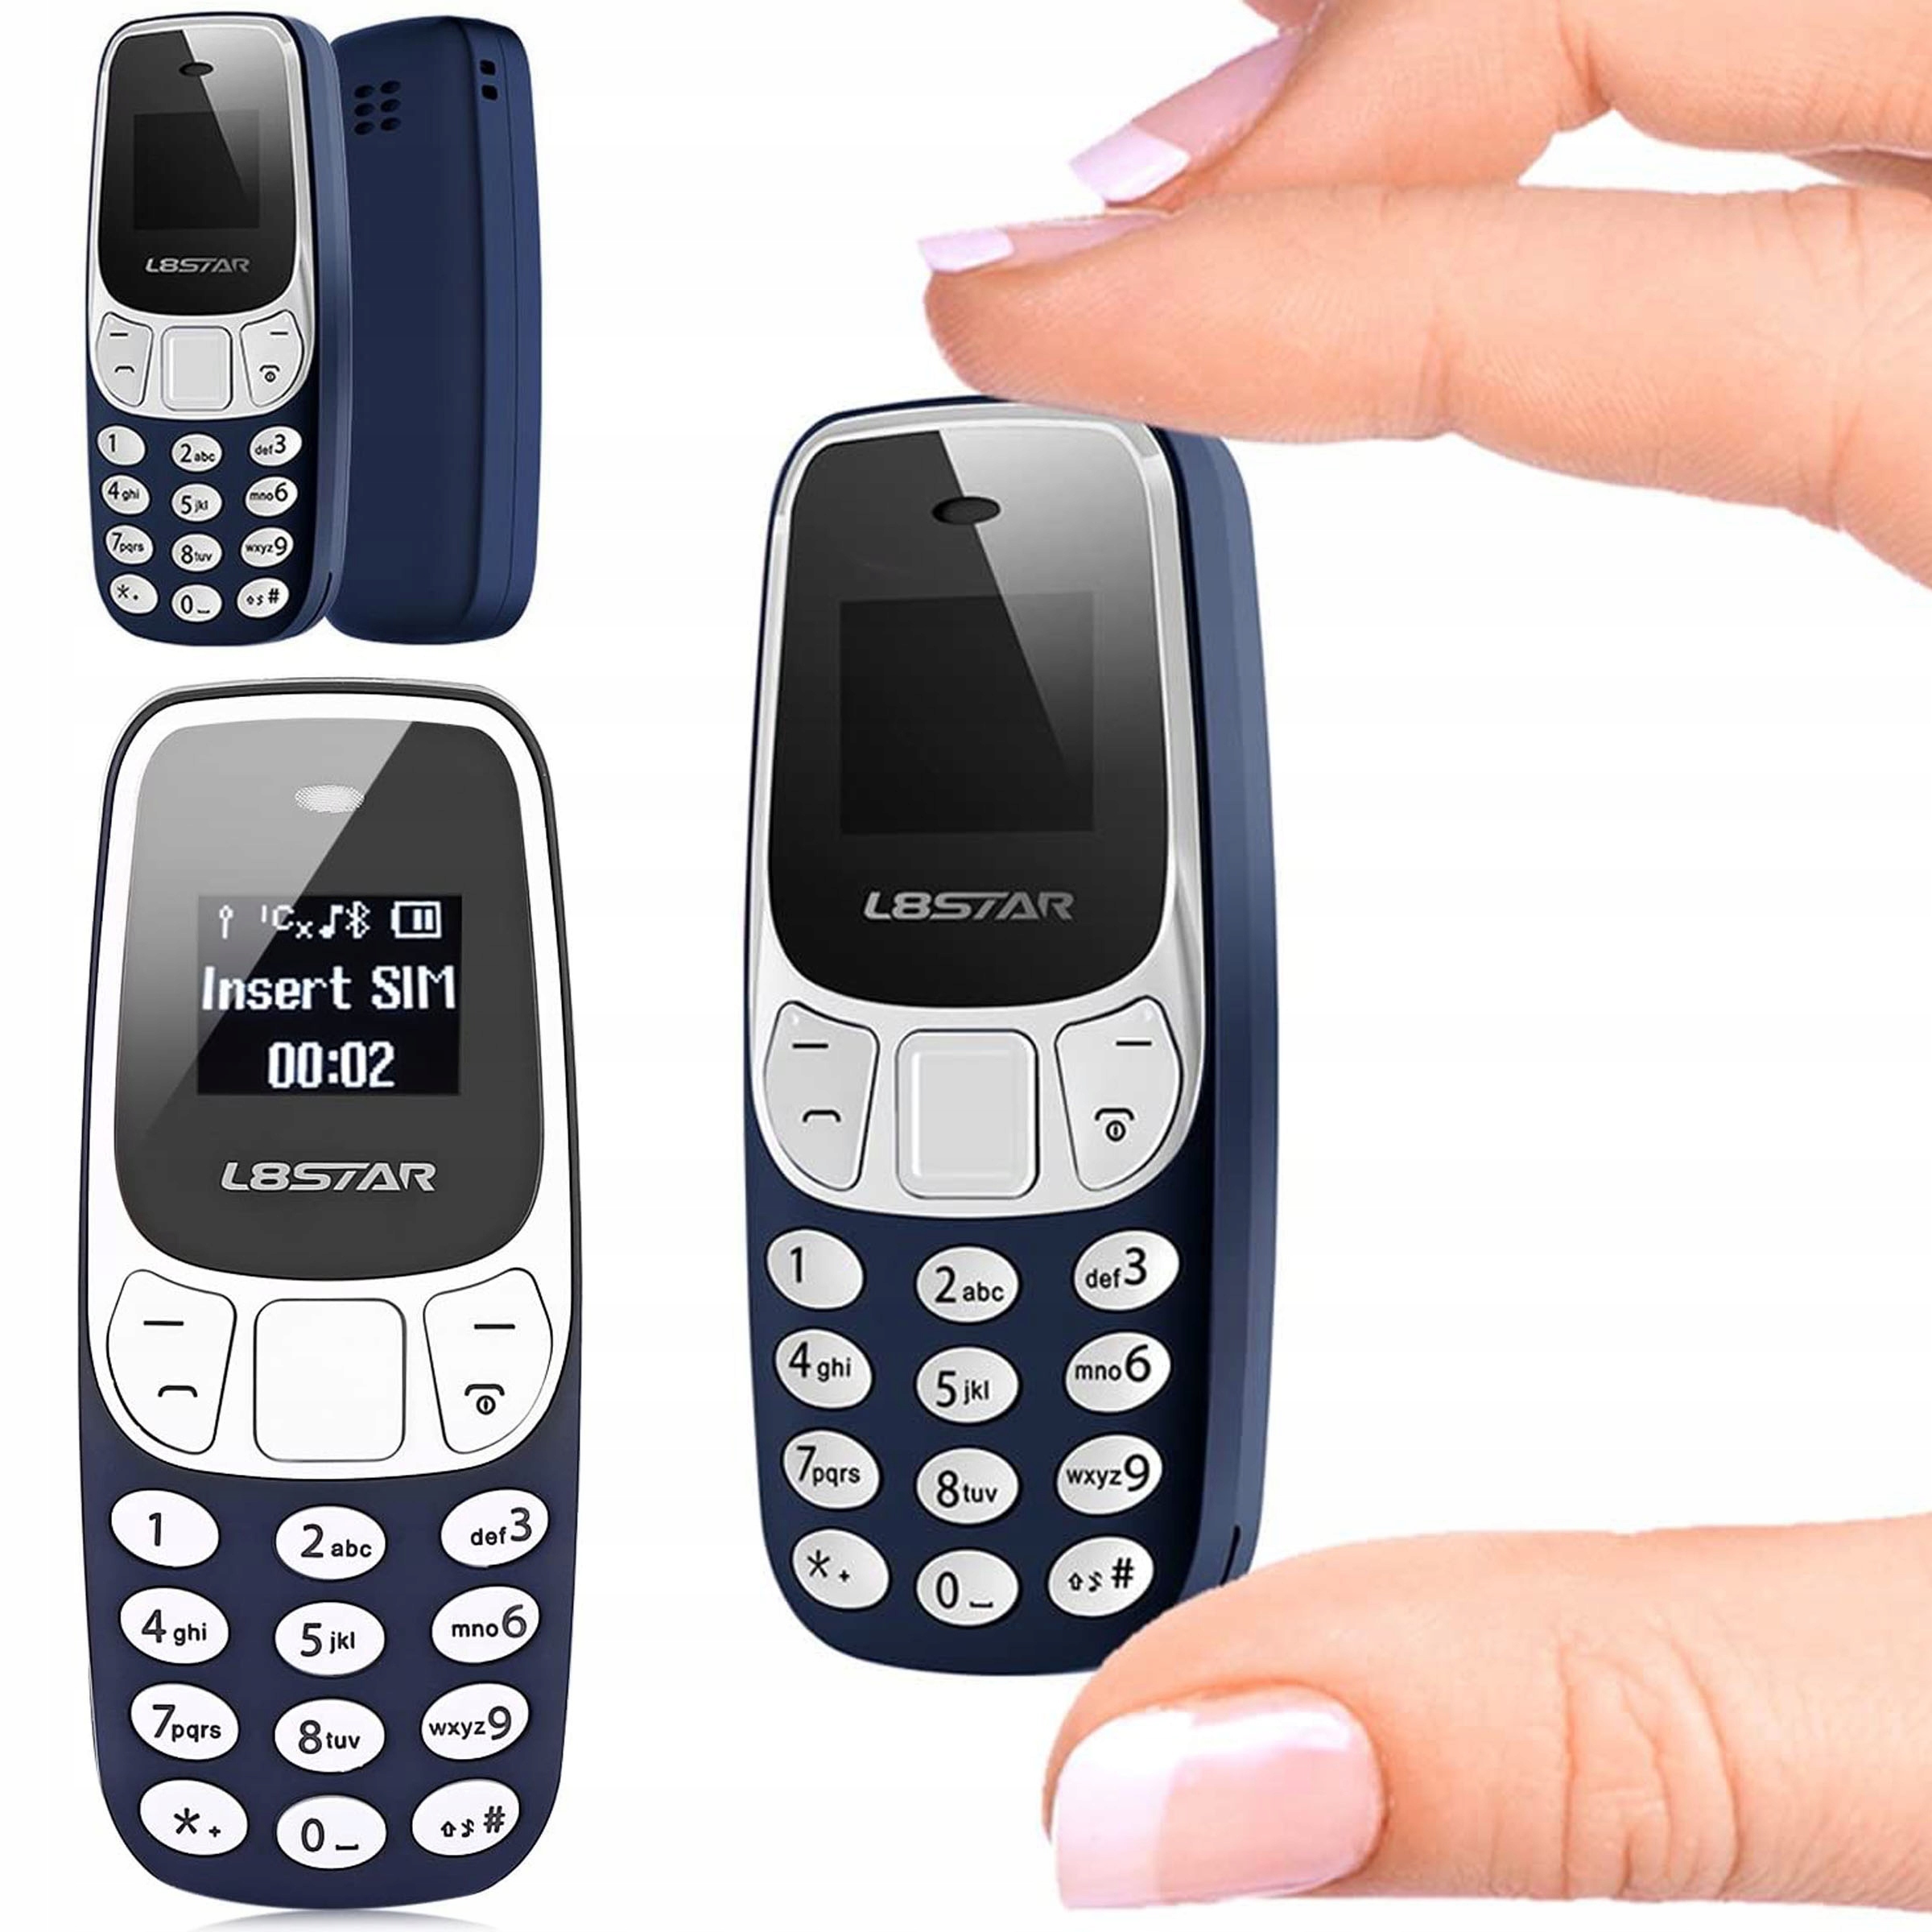 Нокиа маленький телефон. L8star bm10. Мини телефон l8star bm10. Телефон l8star BM 10. Nokia 3310 Mini.